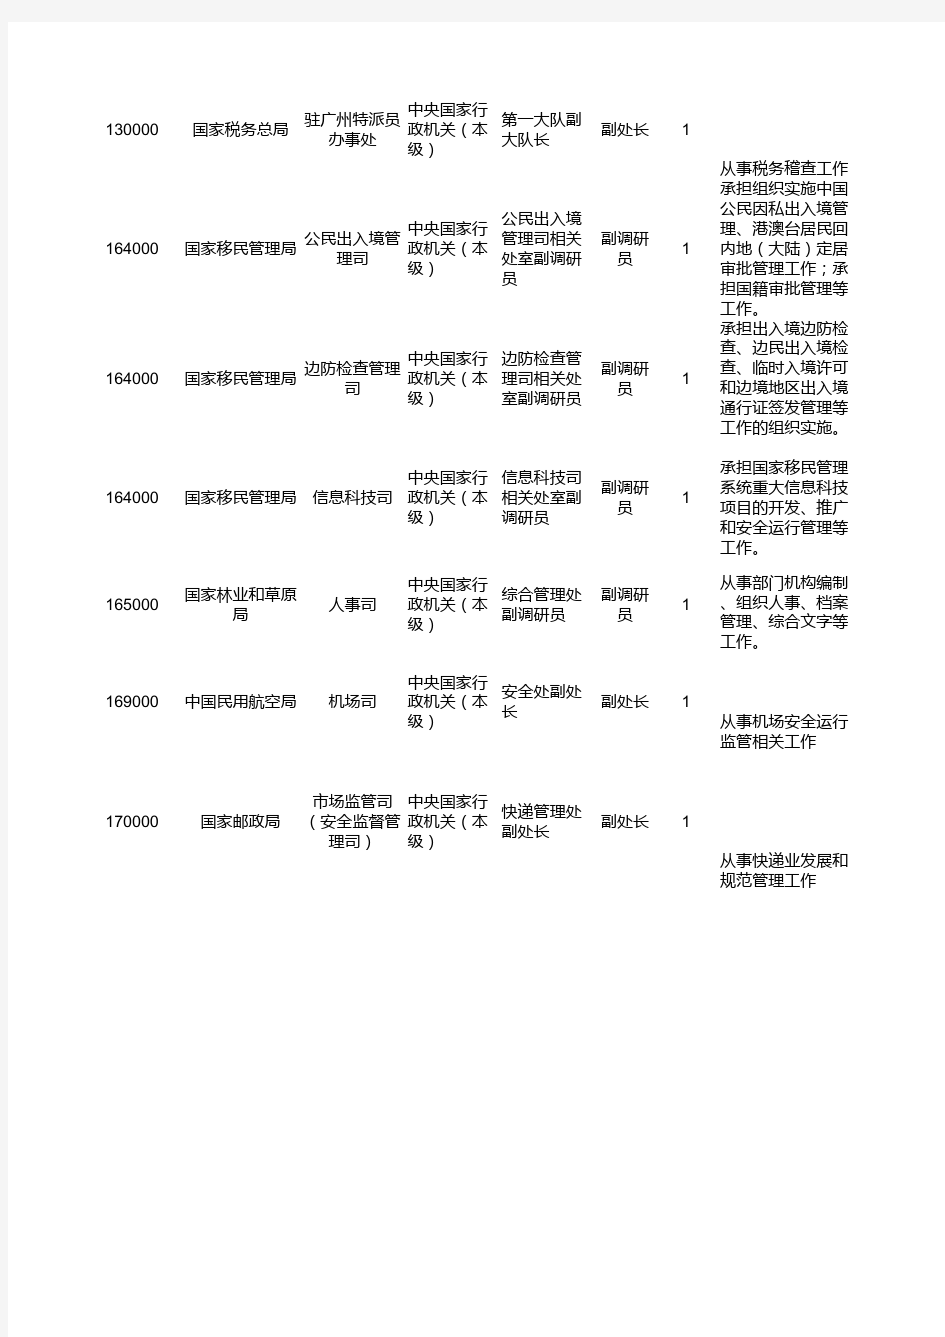 2019年度中央机关公开遴选公务员职位计划表